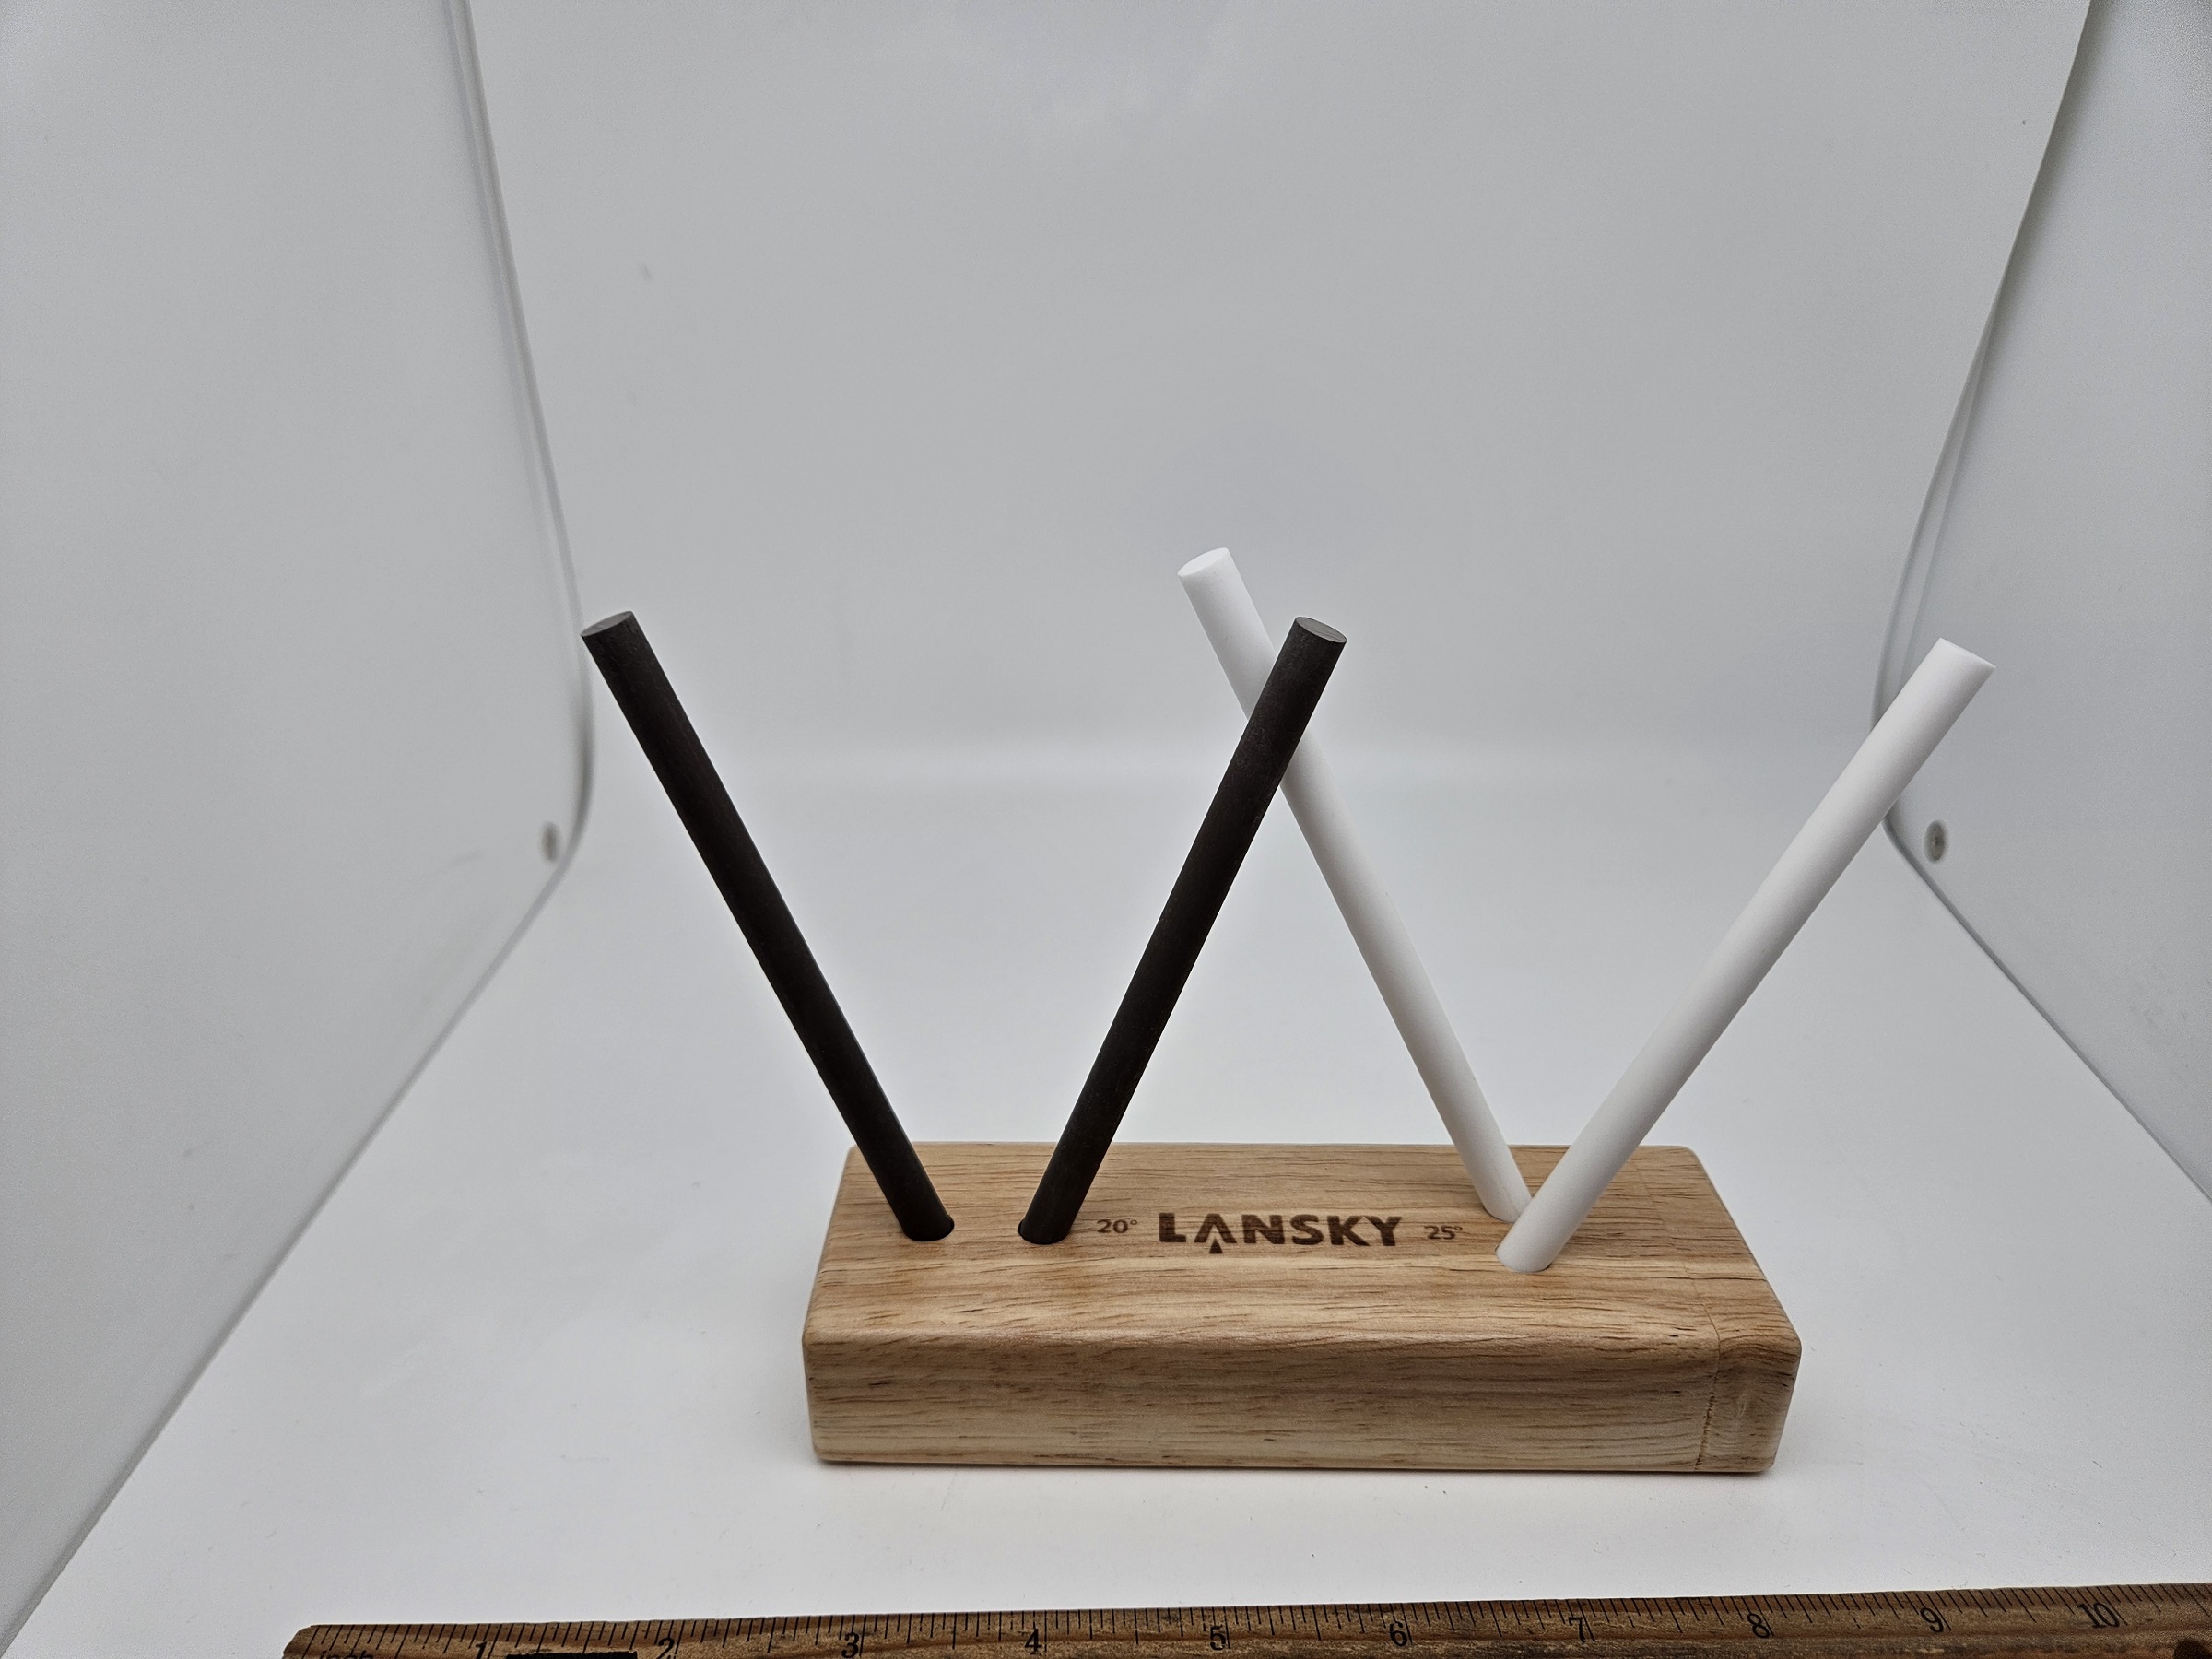 4-Rod Ceramic TurnBox Knife Sharpener - Lansky